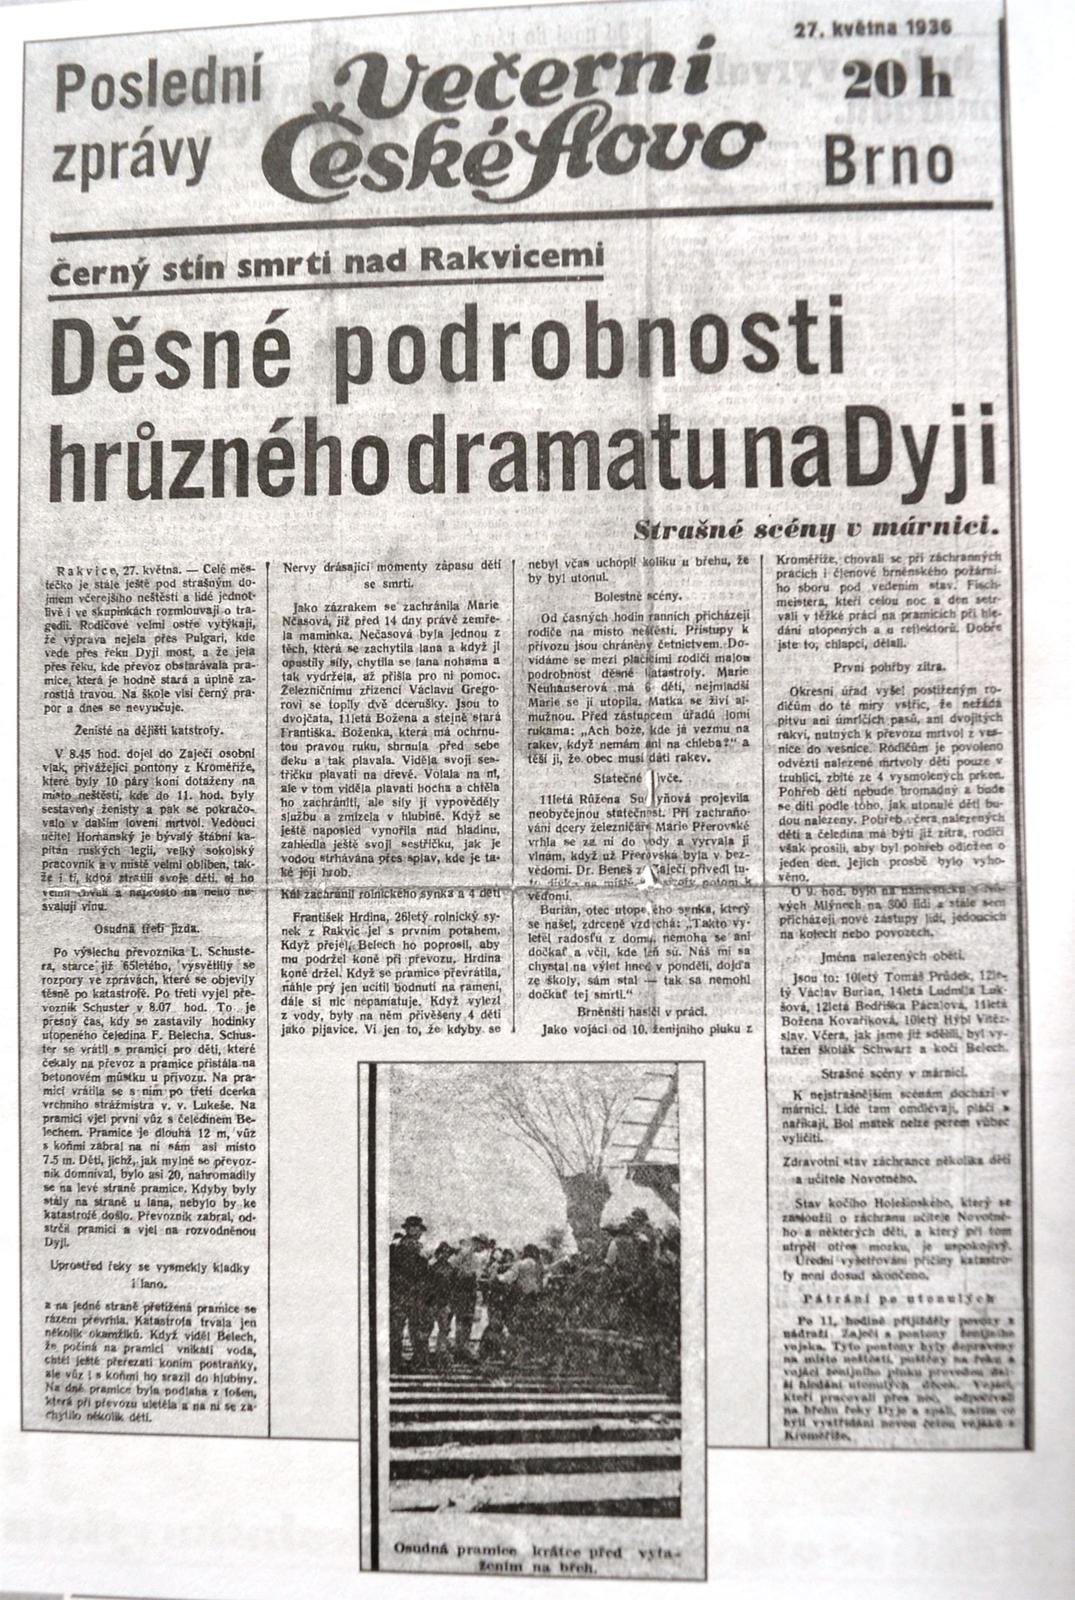 O rakvické tragédii referovaly na jaře 1936 obšírně všechny noviny.